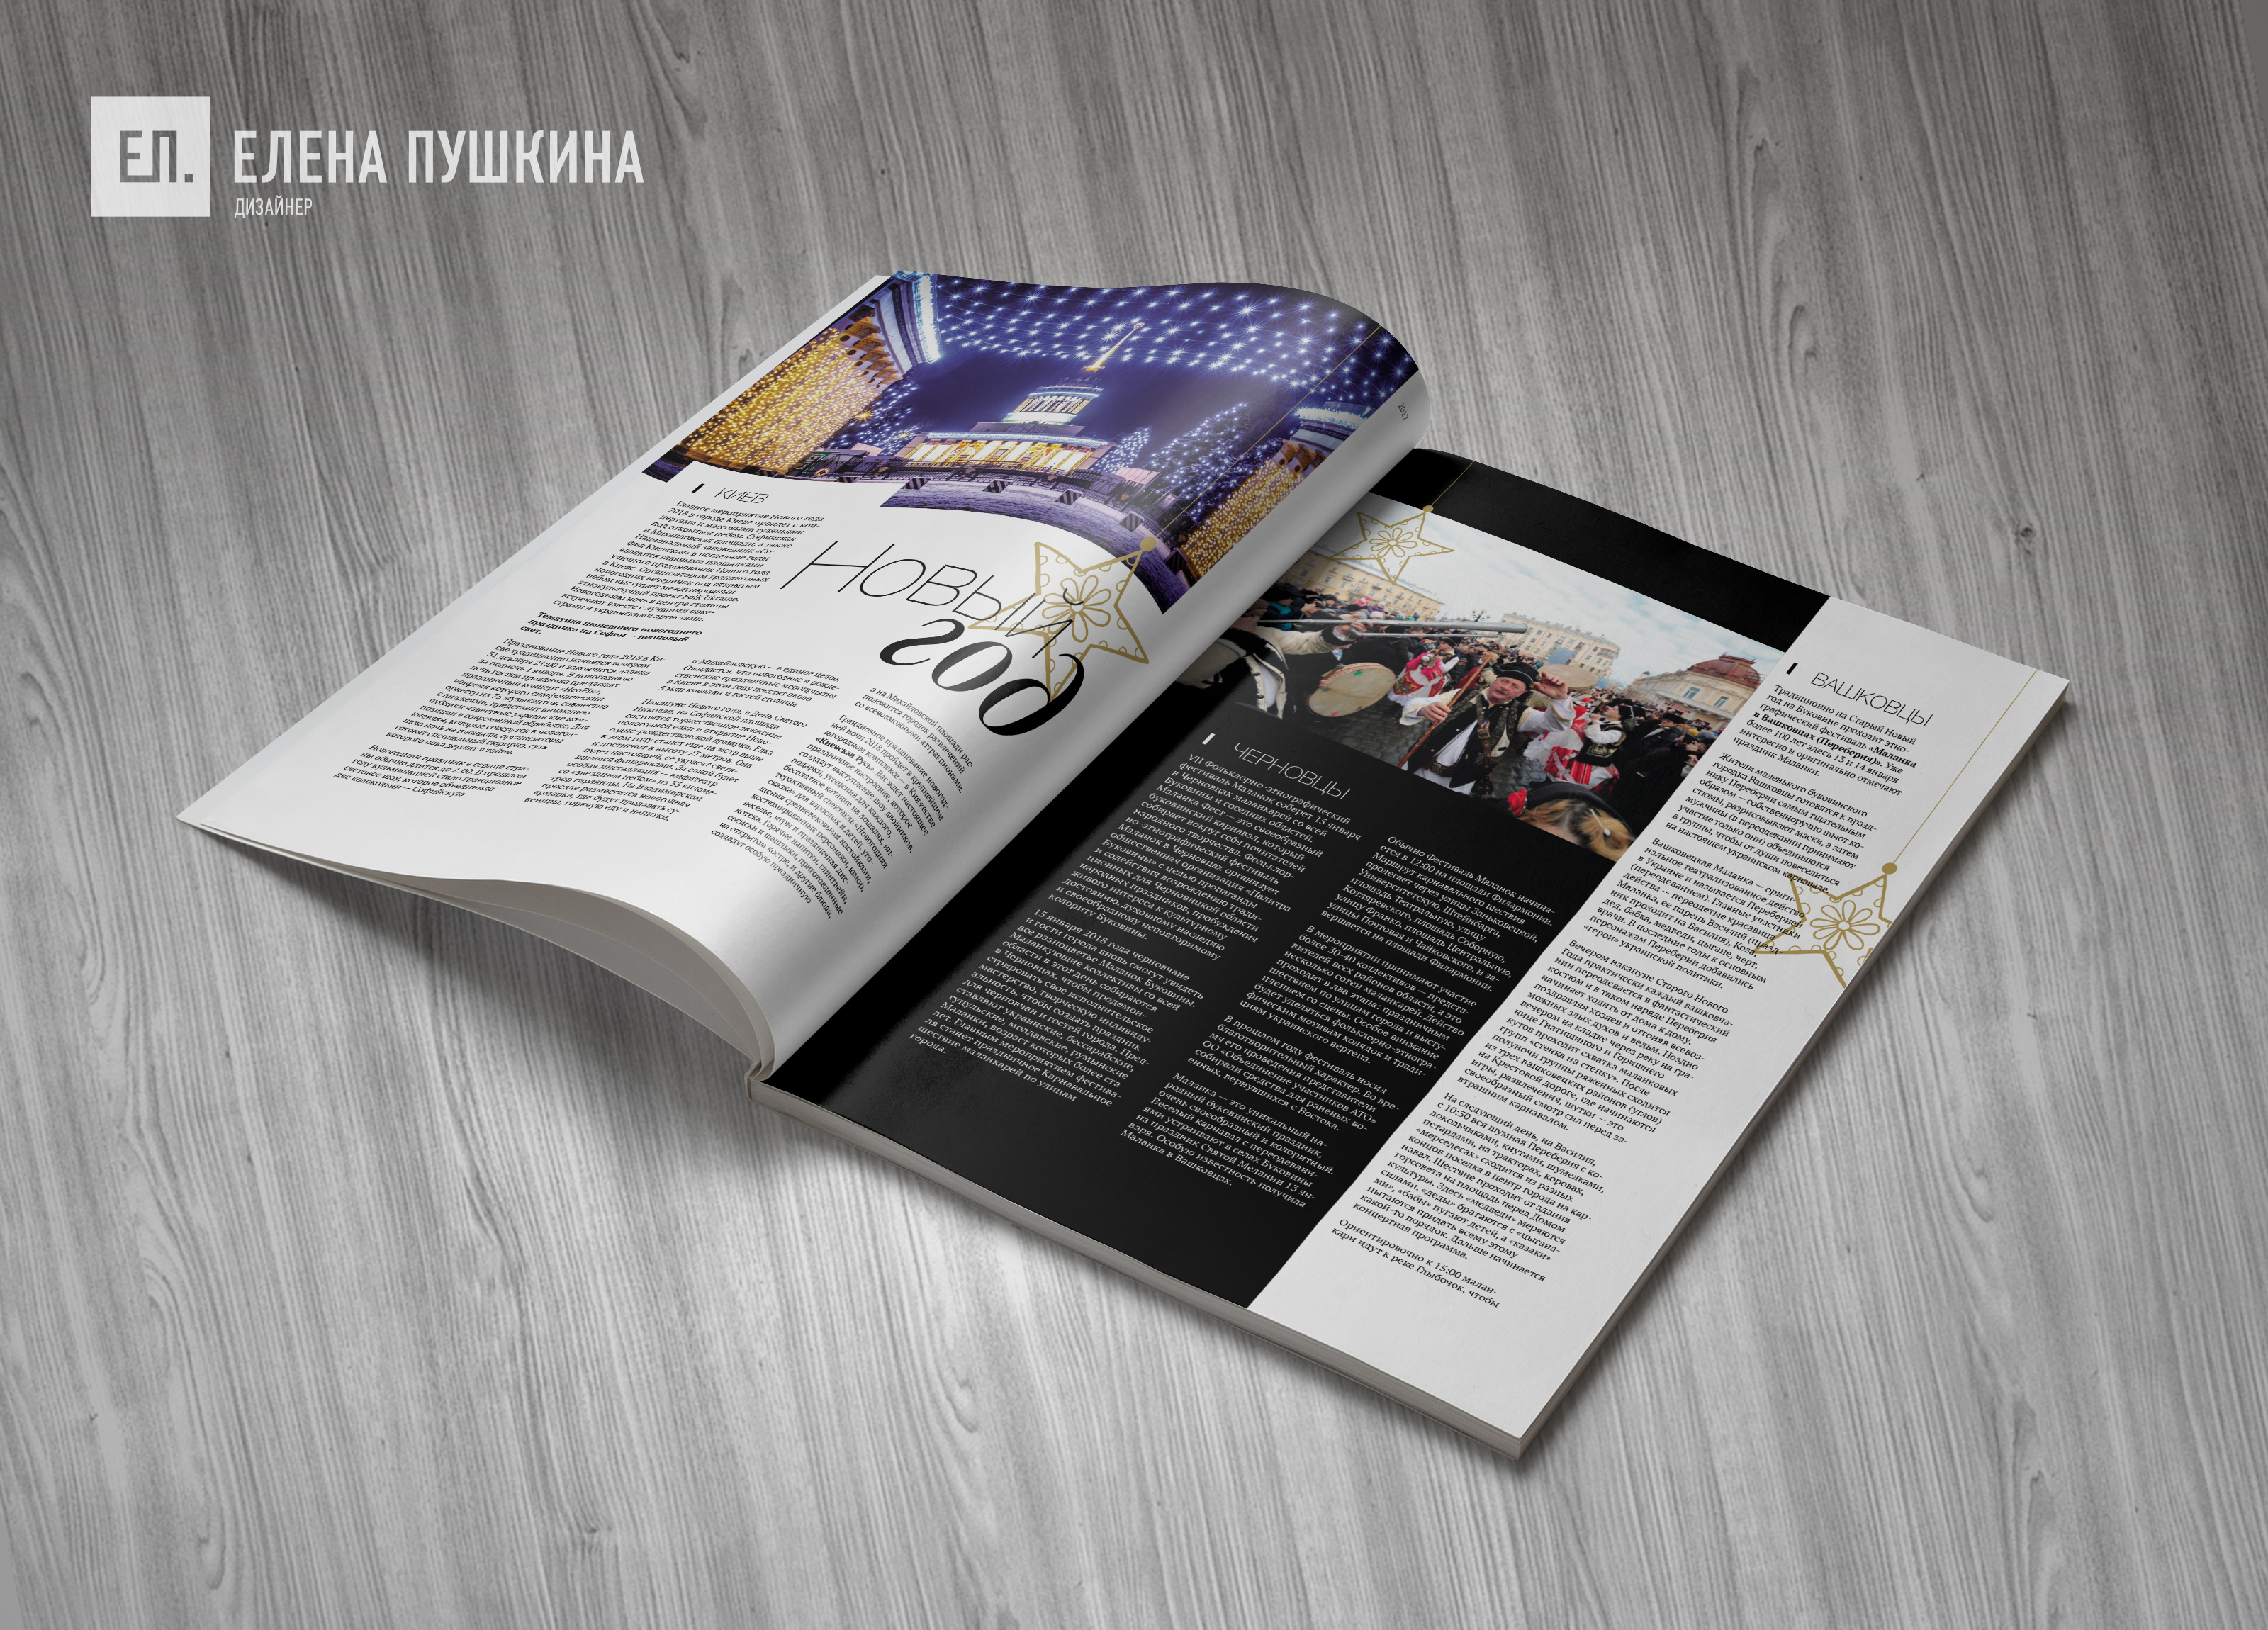 Глянцевый журнал «CoolBaba» №41 декабрь 2017 — разработка дизайна и вёрстка журнала Разработка журналов Портфолио